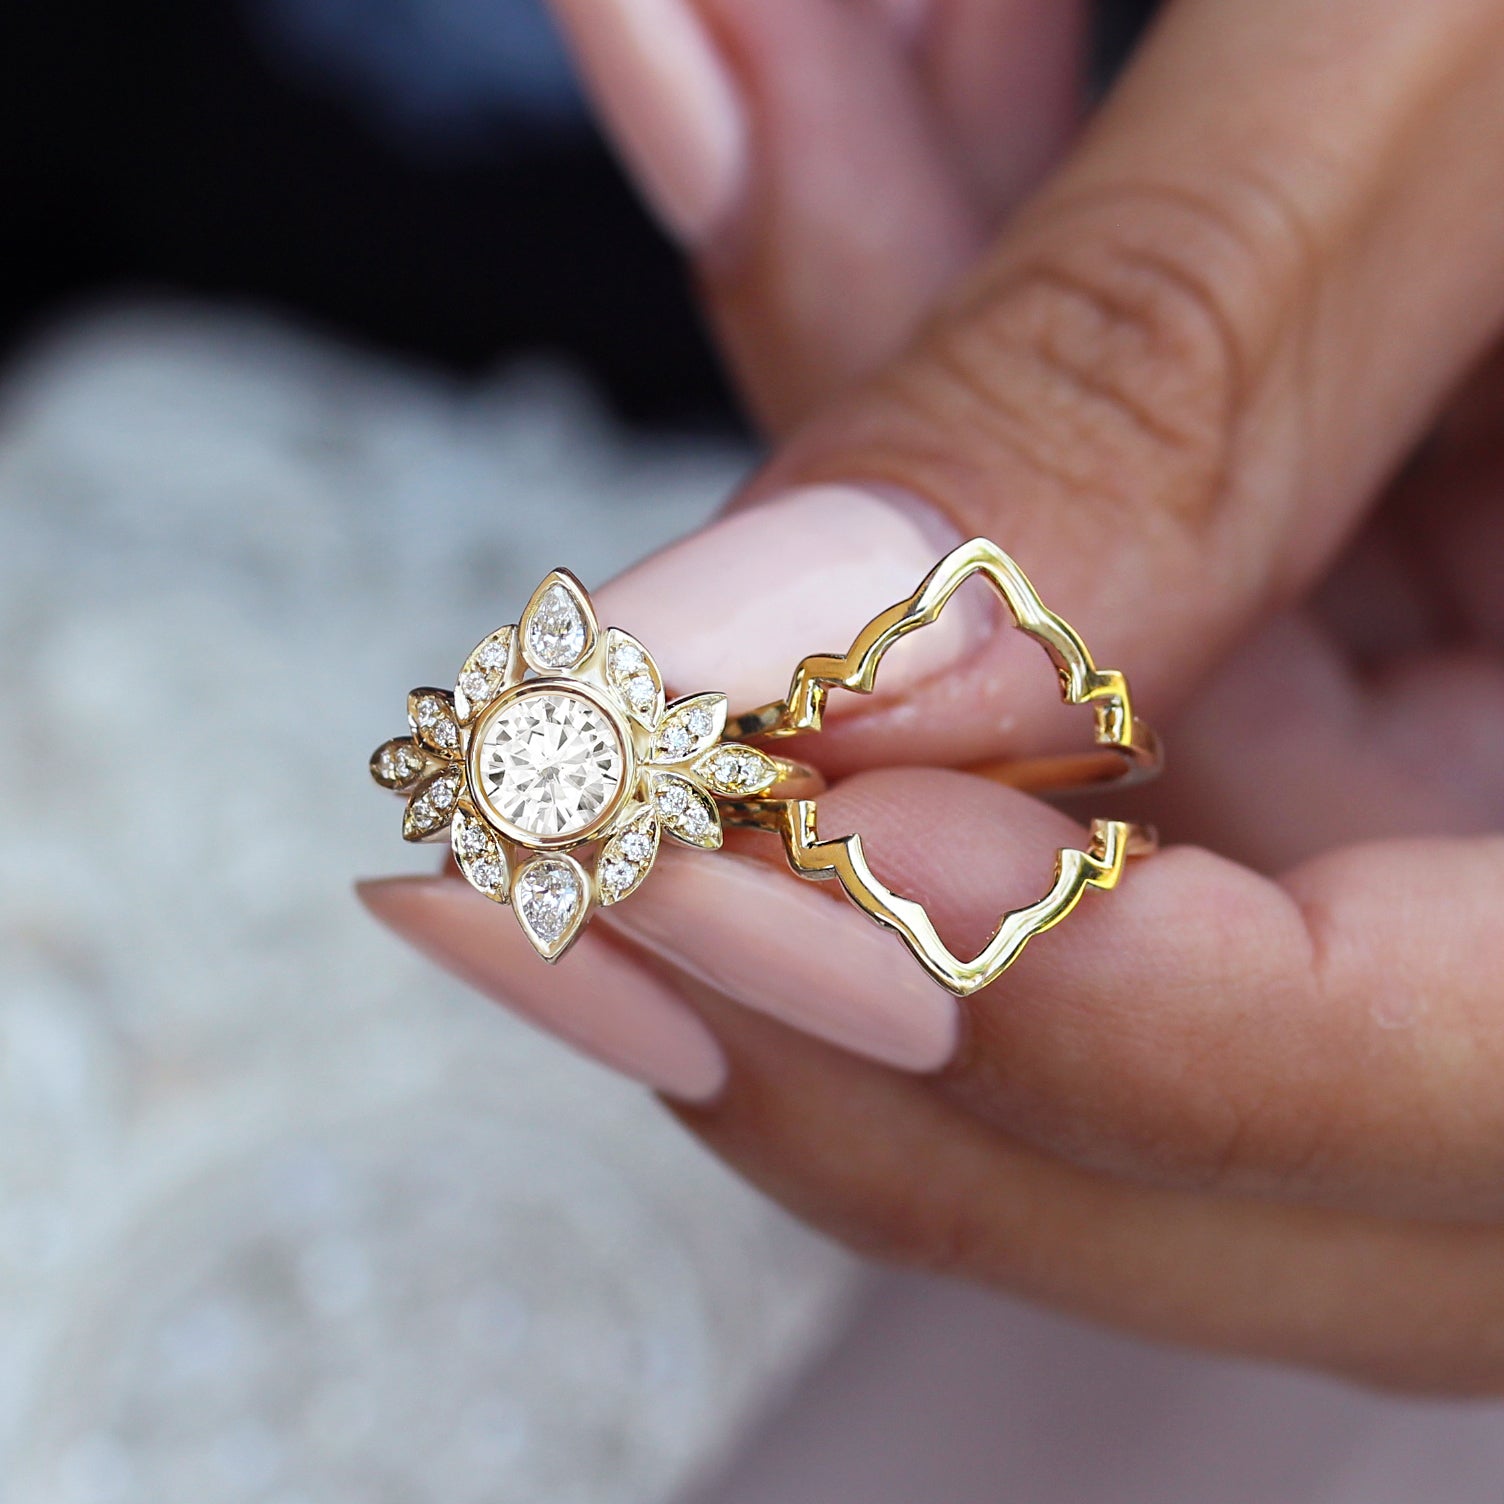 0.45 carat diamond flower design ring in yellow gold - BAUNAT